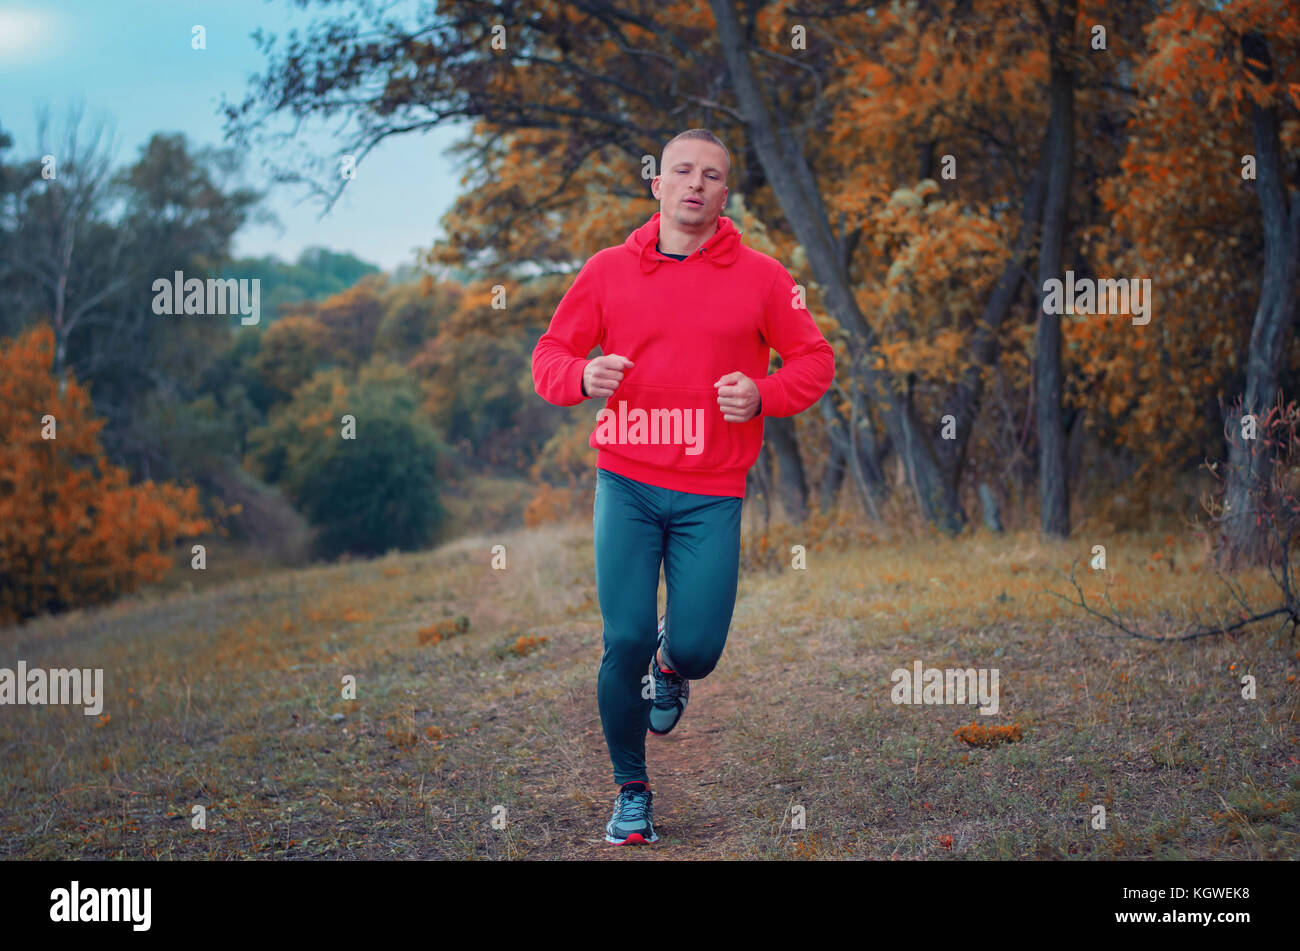 Un sottile uomo forte in un nero sport leggins e giacca rossa corre sul colorfull autumnall forest hill. foto mostra uno stile di vita sano. Foto Stock